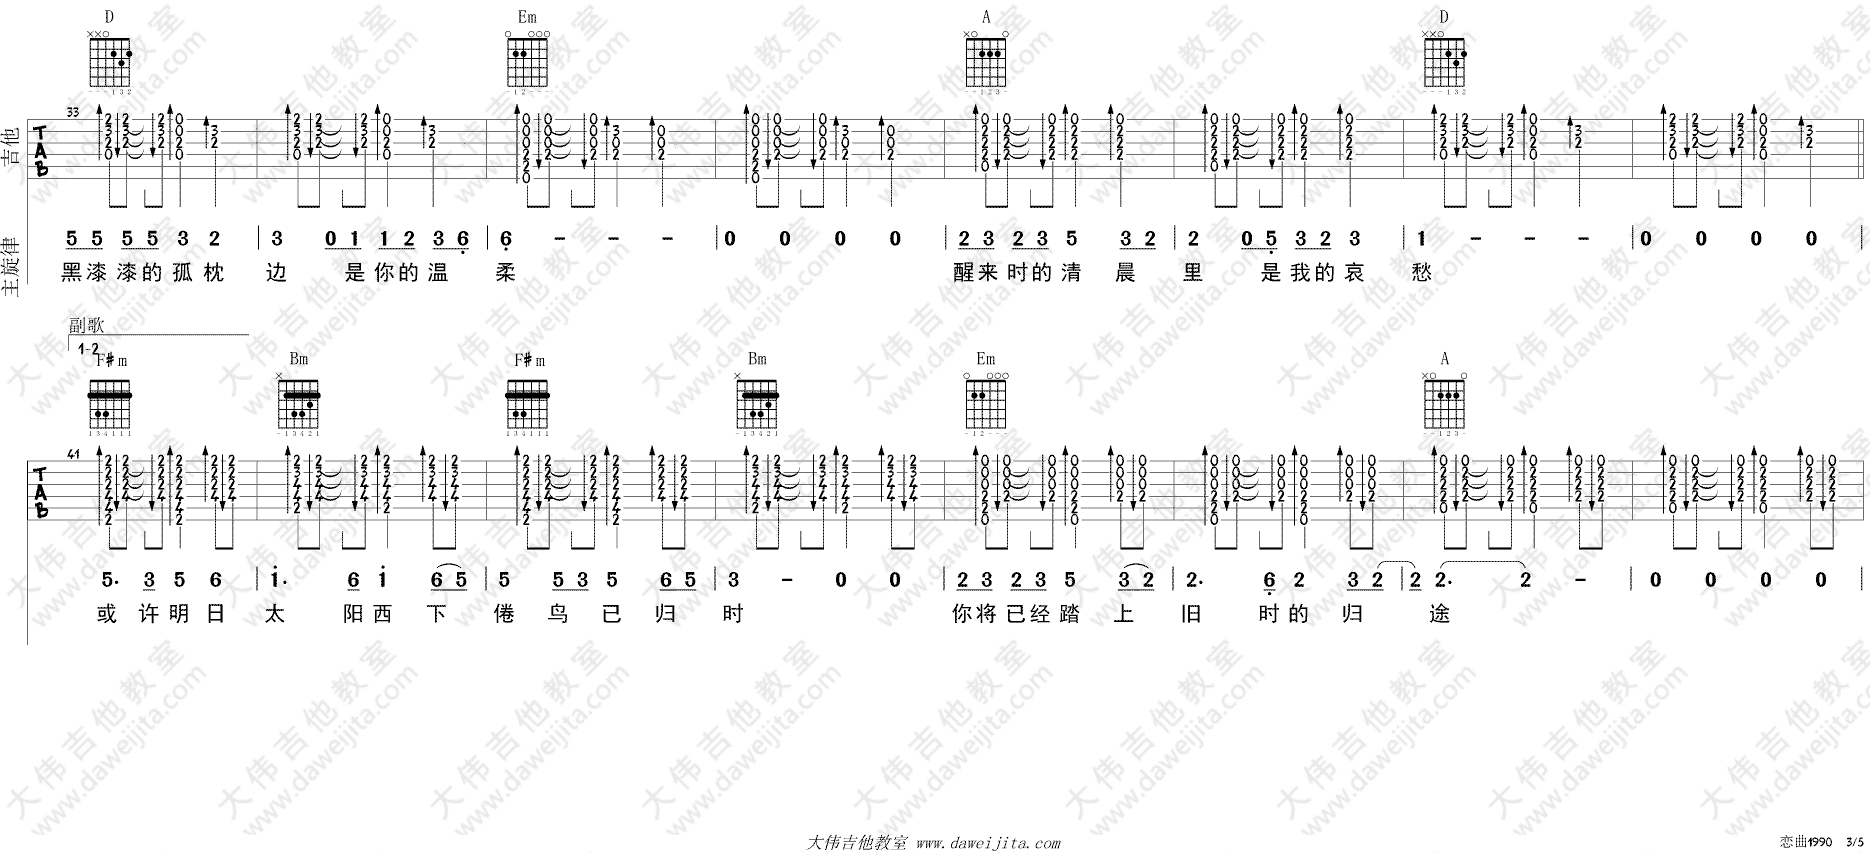 罗大佑_恋曲1990_吉他谱(D调)_Guitar_Music_Score